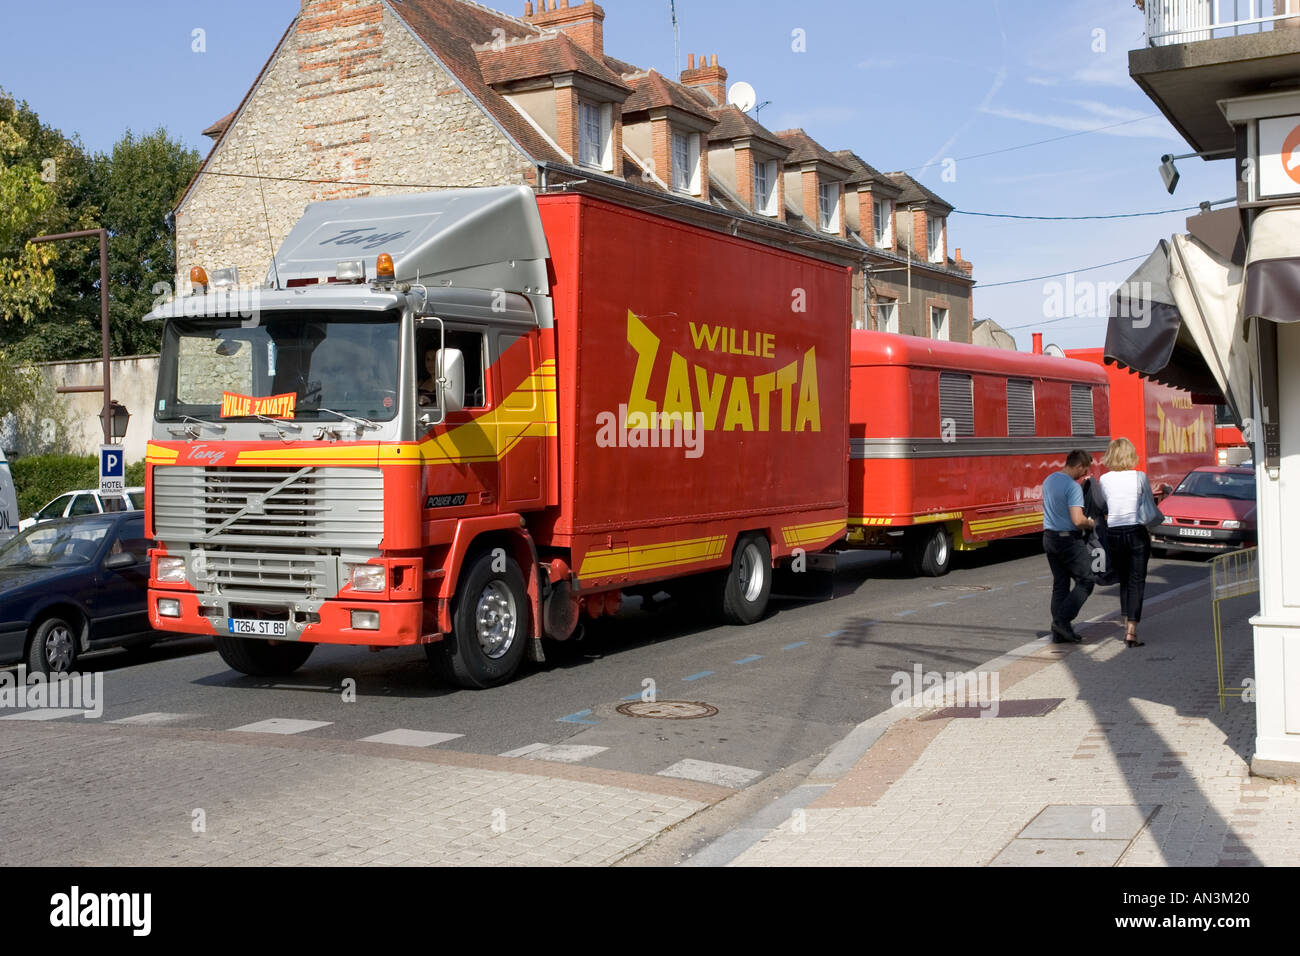 Enorme Willie Zavatta red circus autocarri e rimorchi bloccando il traffico in strade strette di Chateauneuf sur Loire Francia Foto Stock